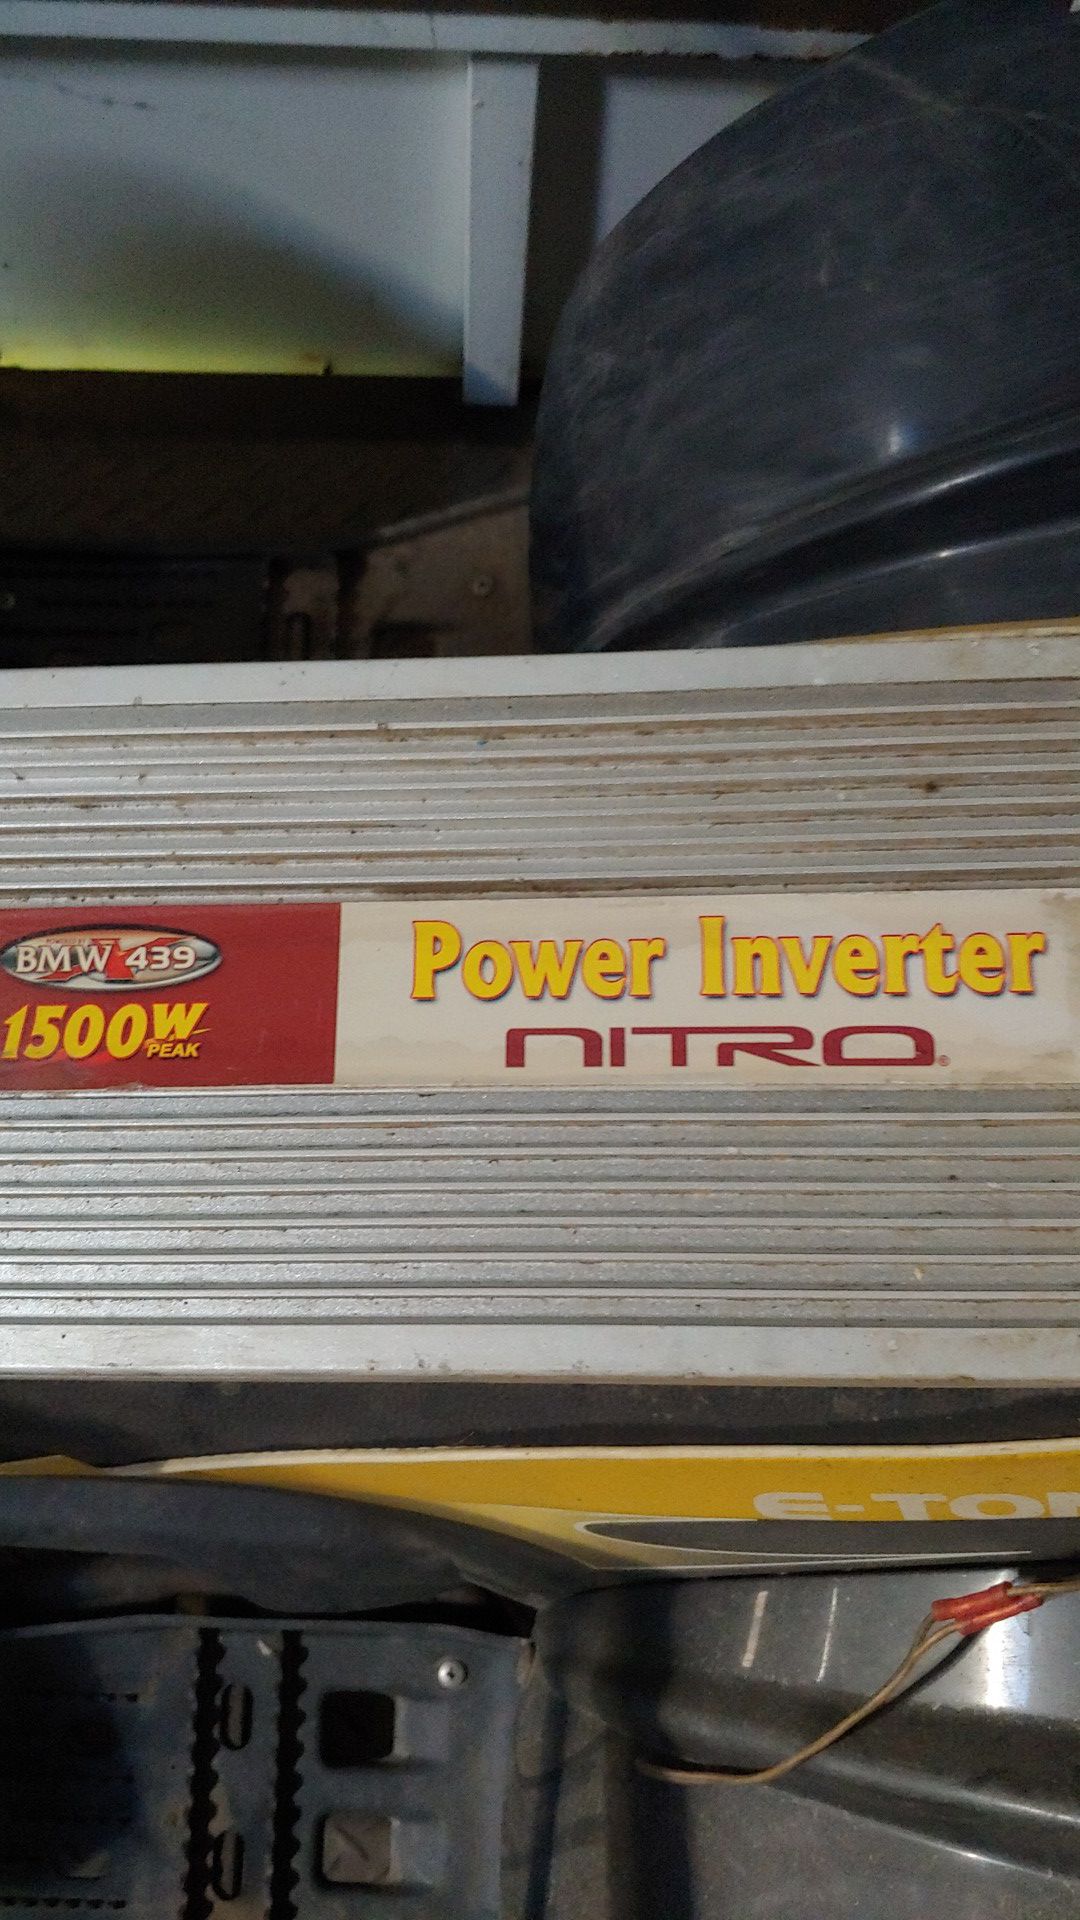 Power inverter nitro